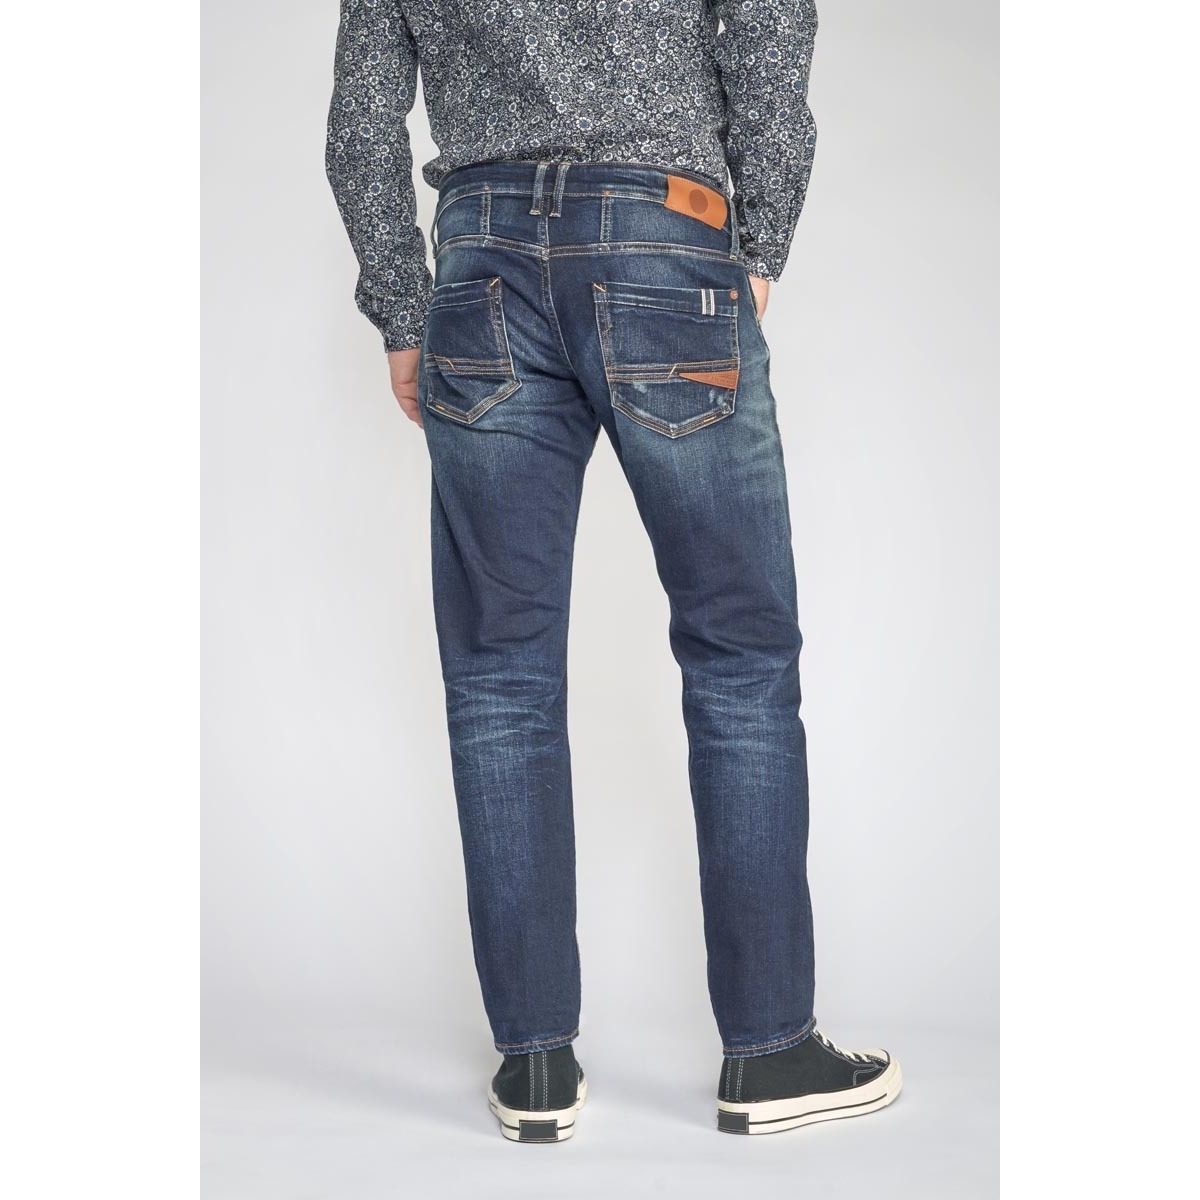 Le Temps des Cerises Bleu Skip 700/11 adjusted jeans destroy vintage bleu N1383WFw